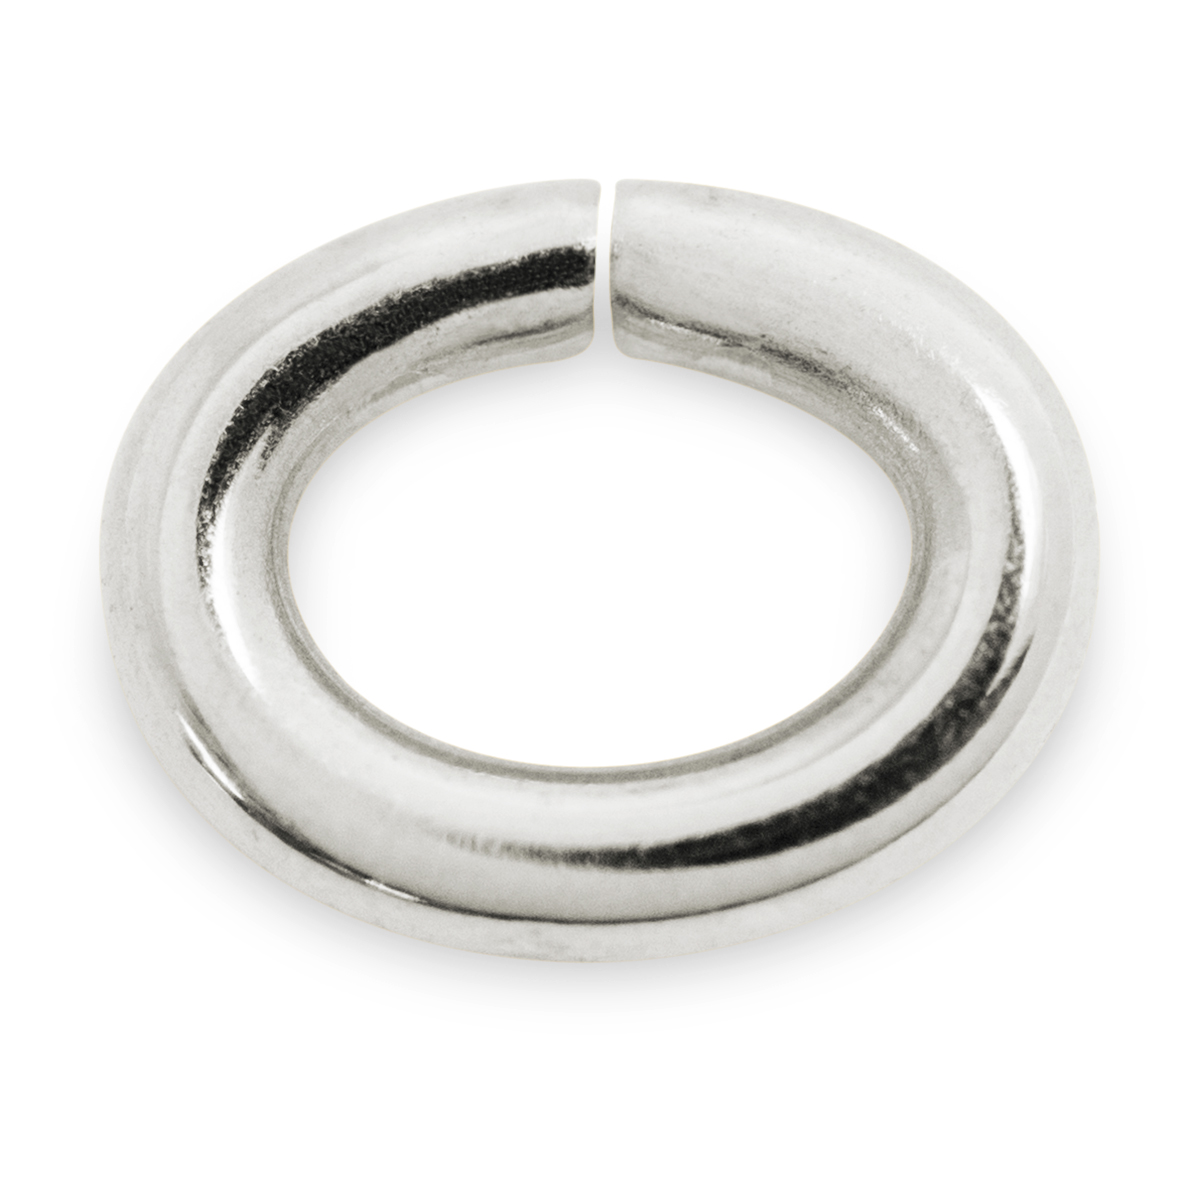 Binderinge, oval, 925/- Silber, Ø 6 mm, Stärke 1 mm